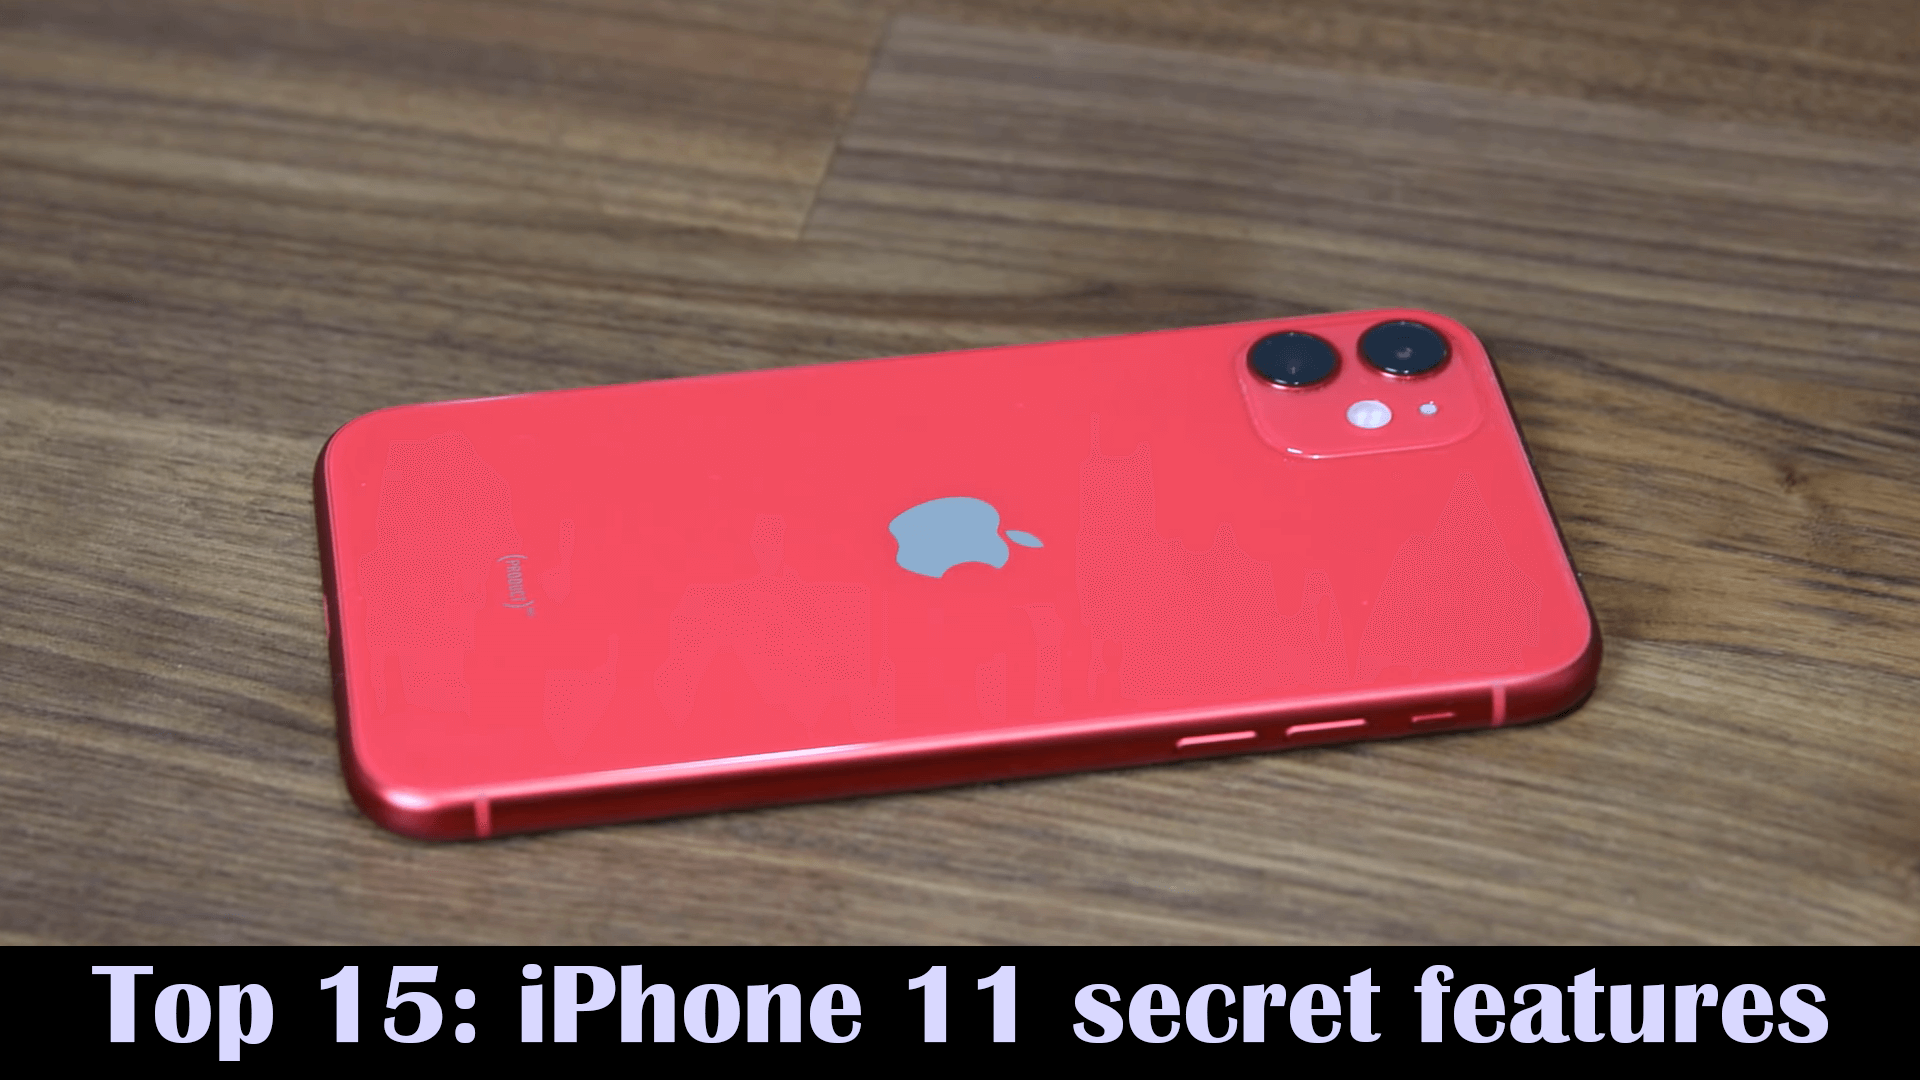 iPhone 11 secret features